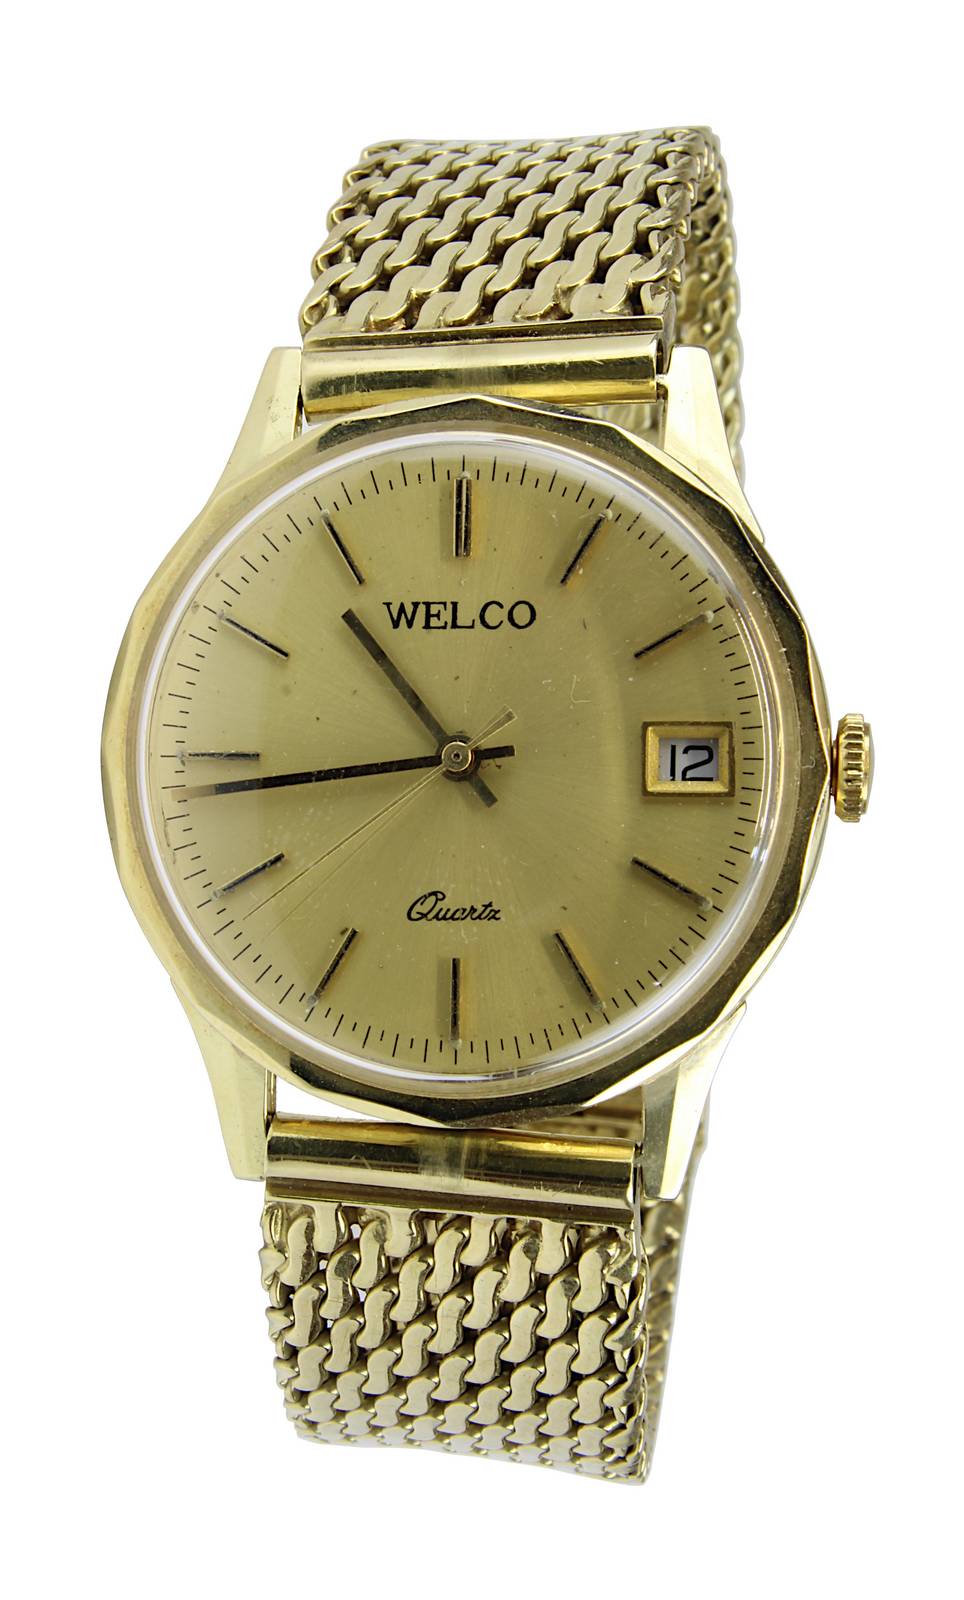 Welco Herrenarmband in Gelbold, Schweiz um 1990, Armbanduhr mit Quarzwerk, Stunden, Minuten und